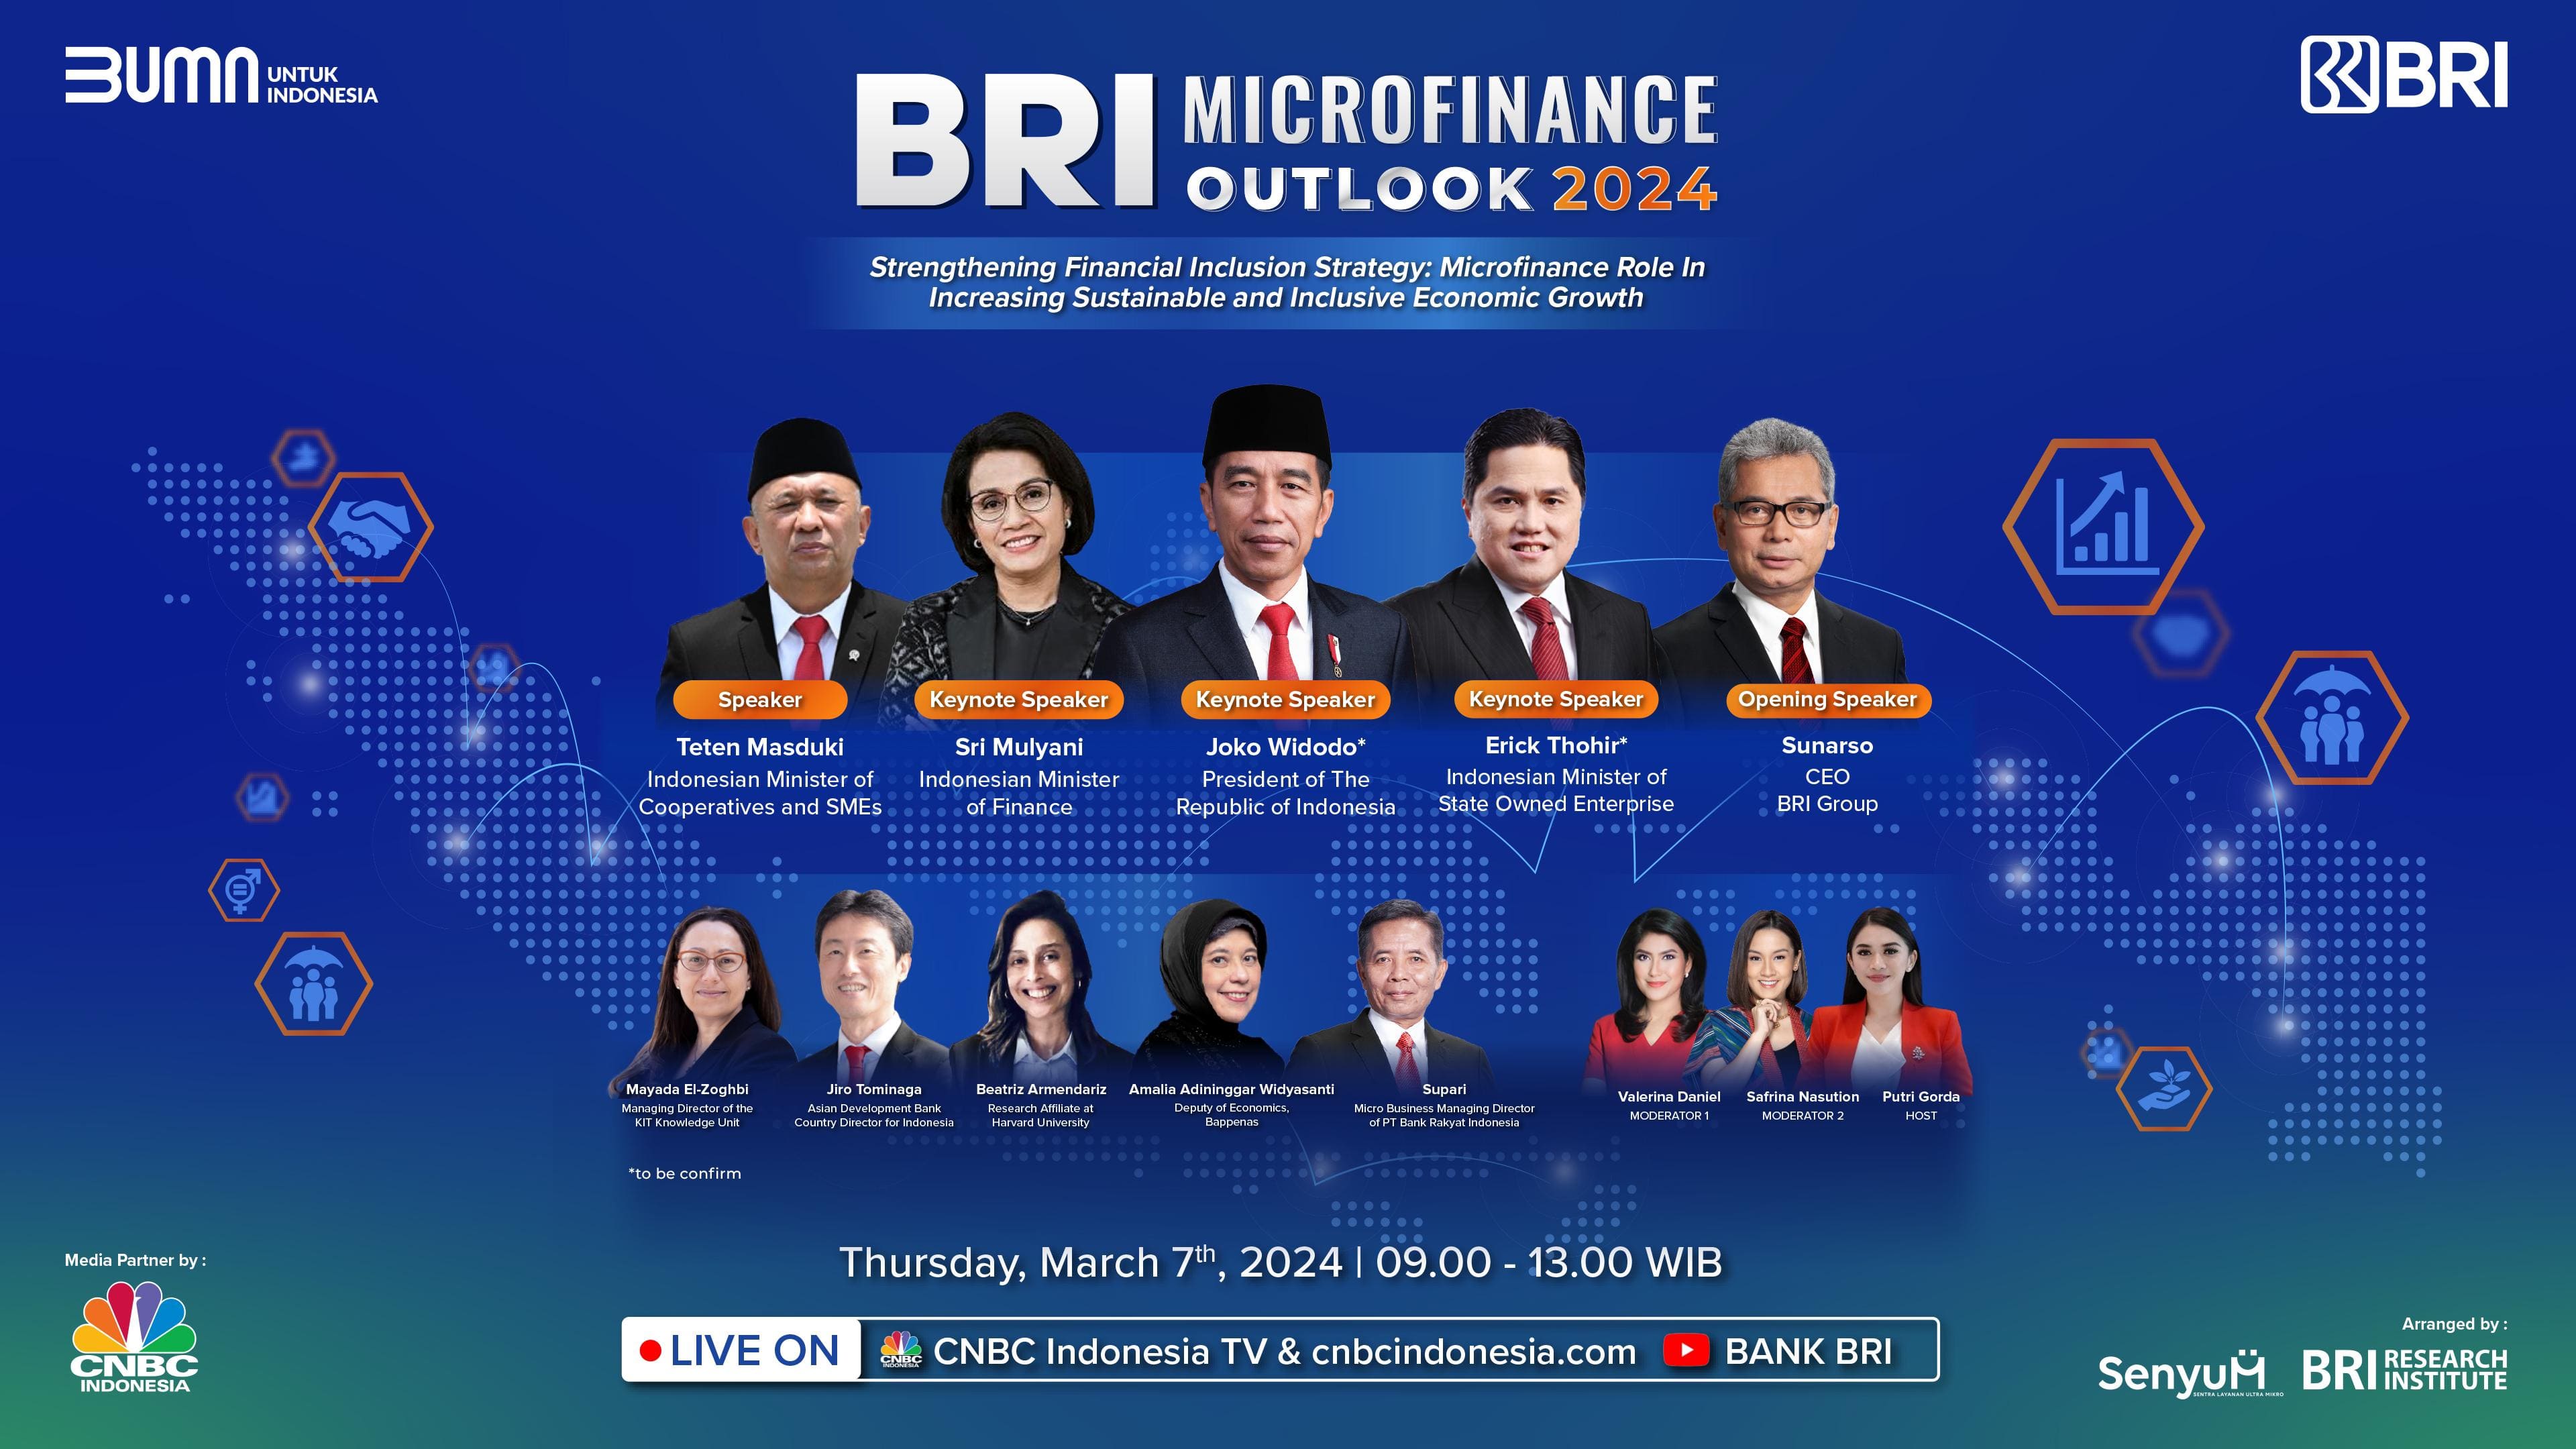 Kembali Diselenggarakan, BRI Microfinance Outlook 2024 Angkat Strategi Memperkuat Inklusi Keuangan